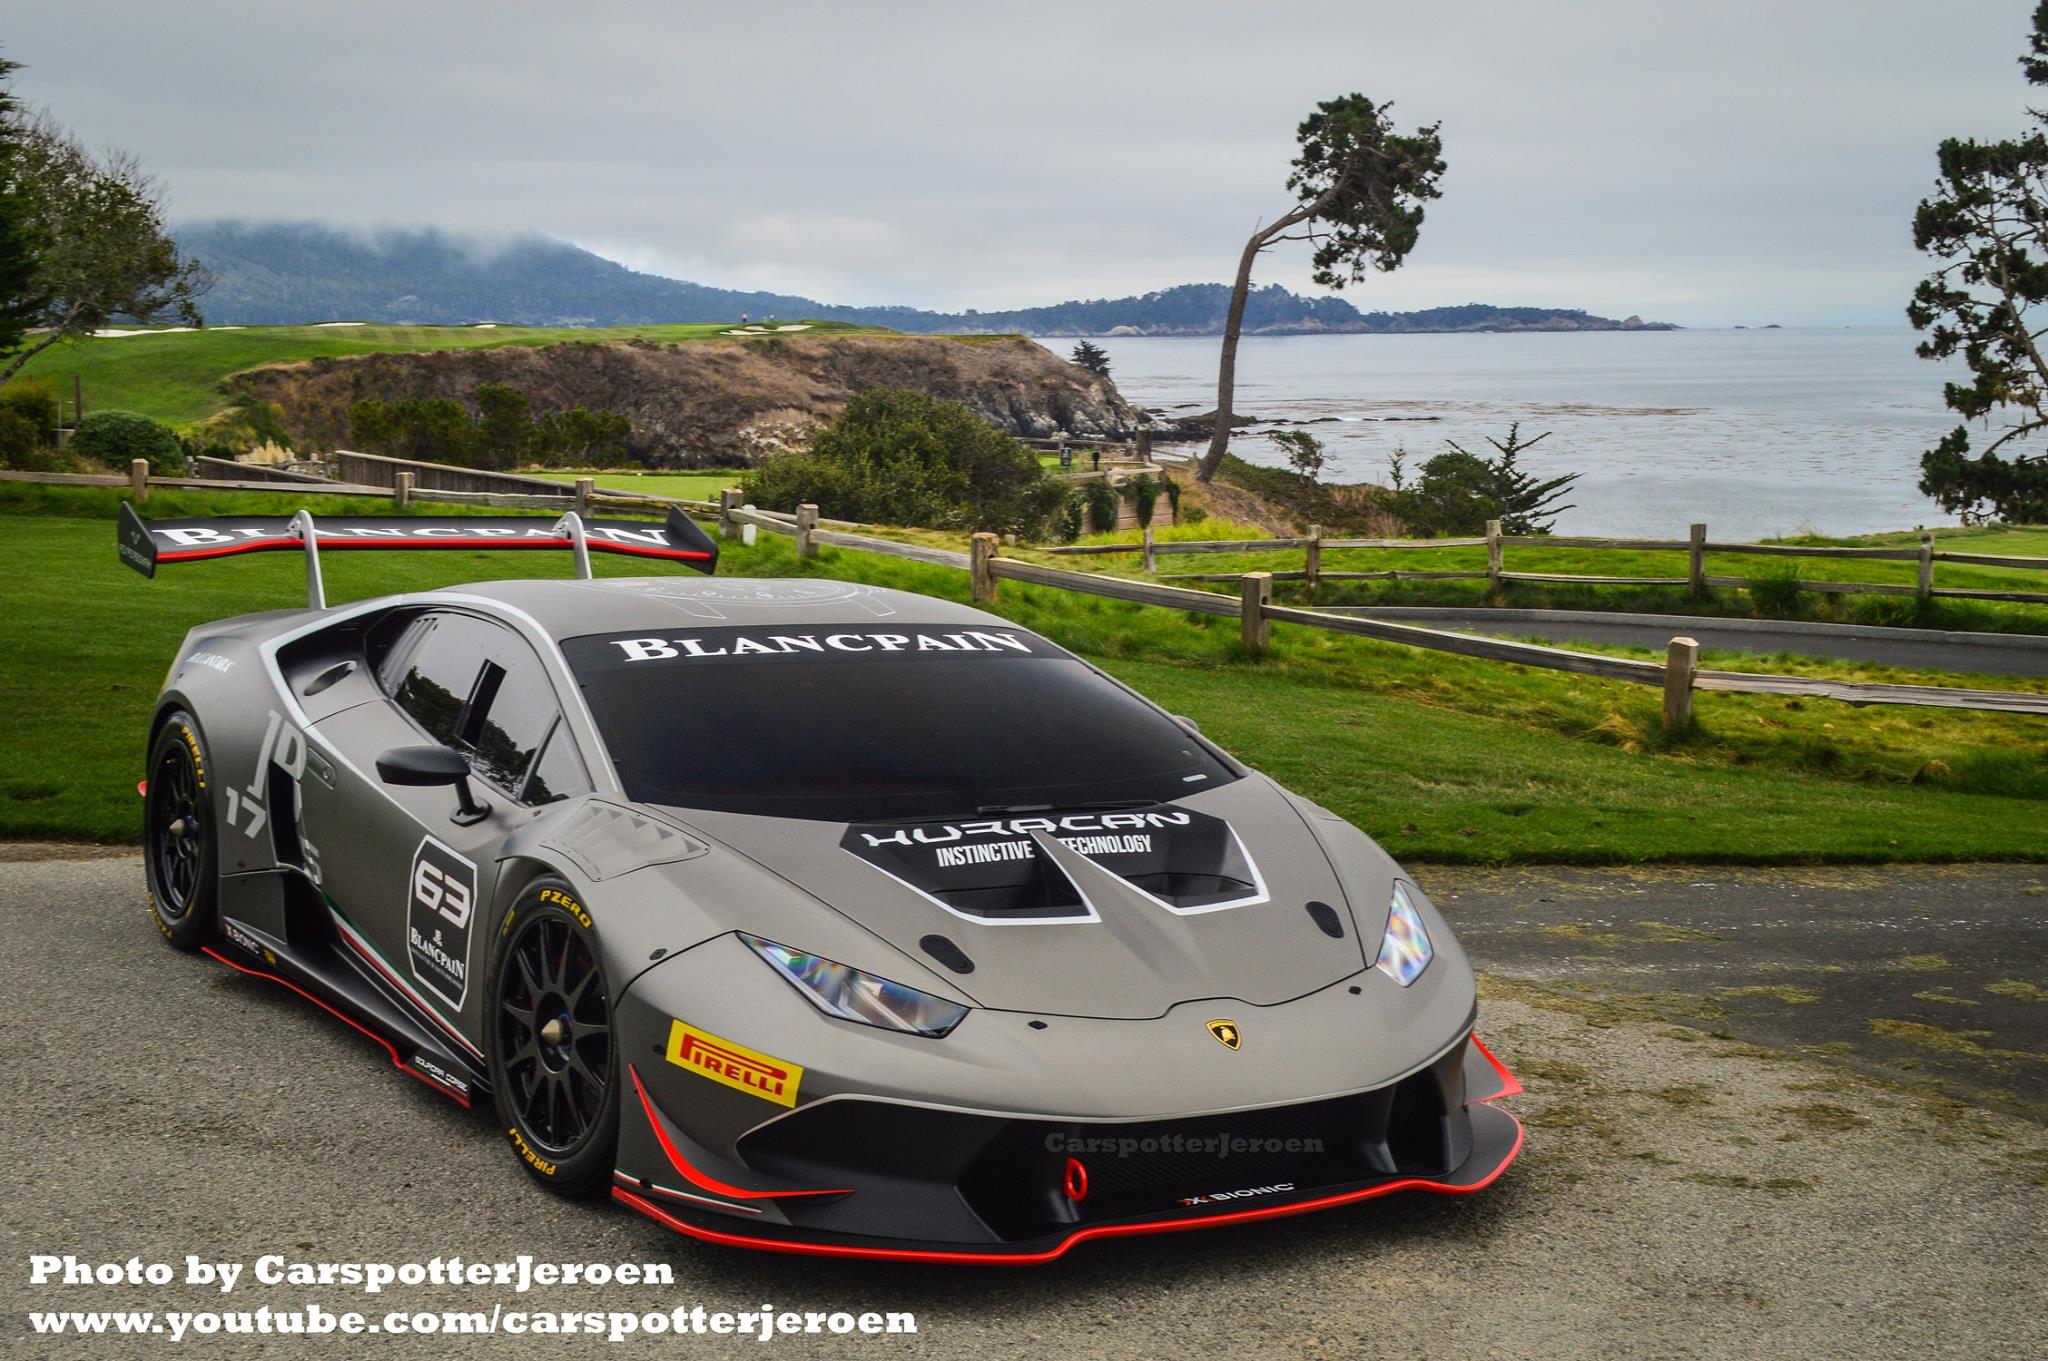 Tampang Sangar Lamborghini Huracan LP610 4 Super Trofeo Terlihat